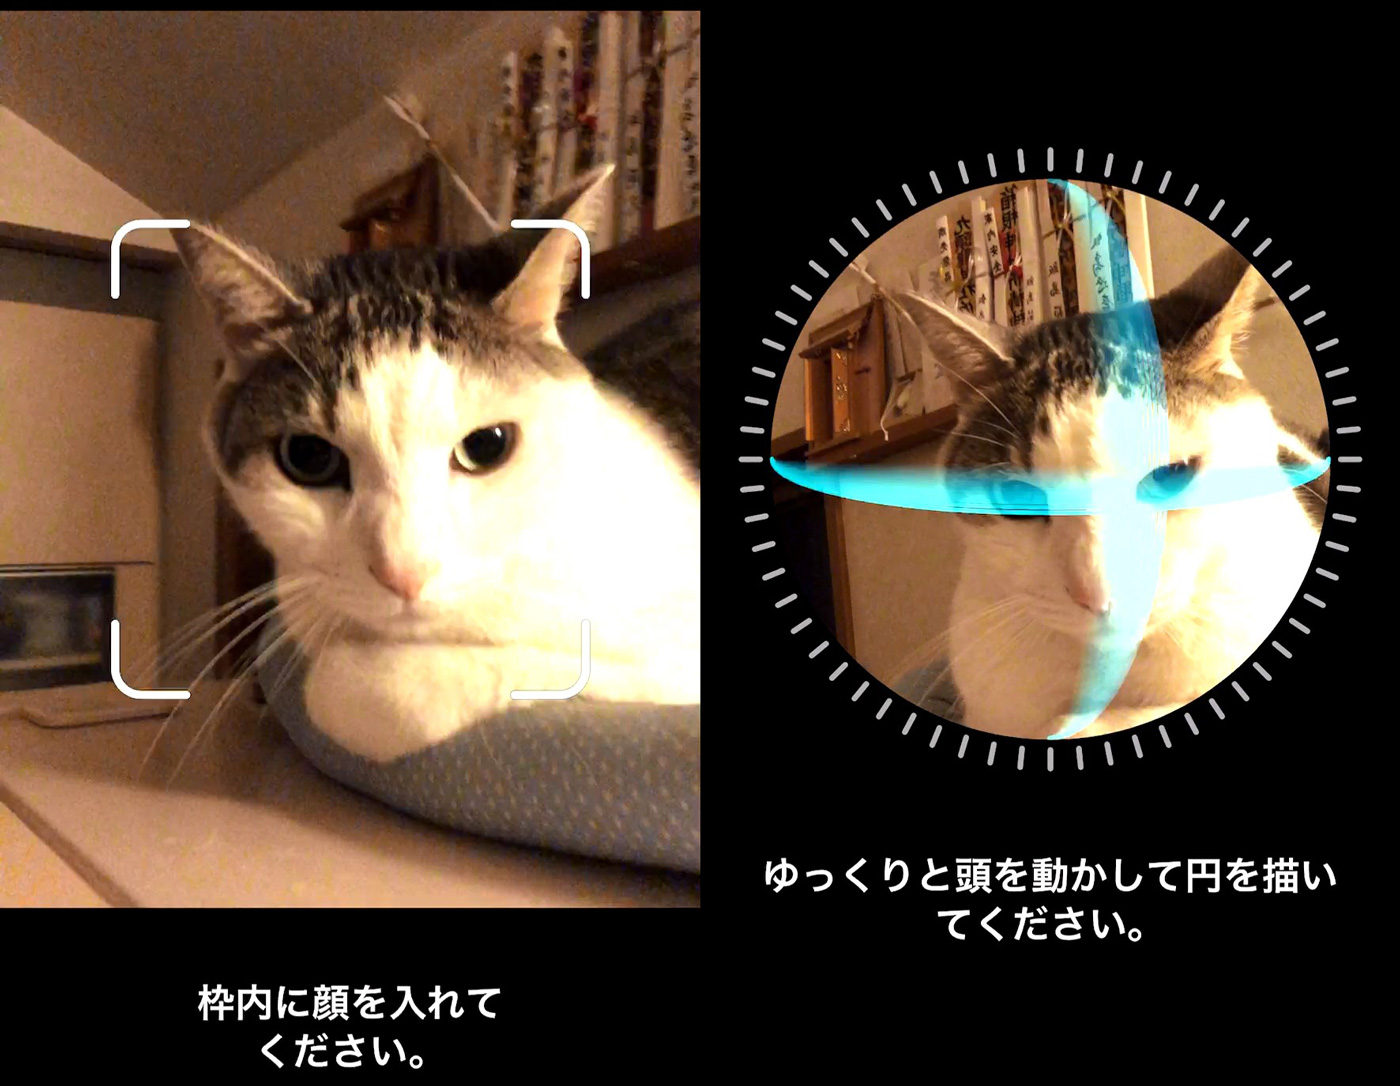 Iphone Xのface Idはネコでもロック解除できる 実際に試してみたら予想外の展開に Engadget 日本版